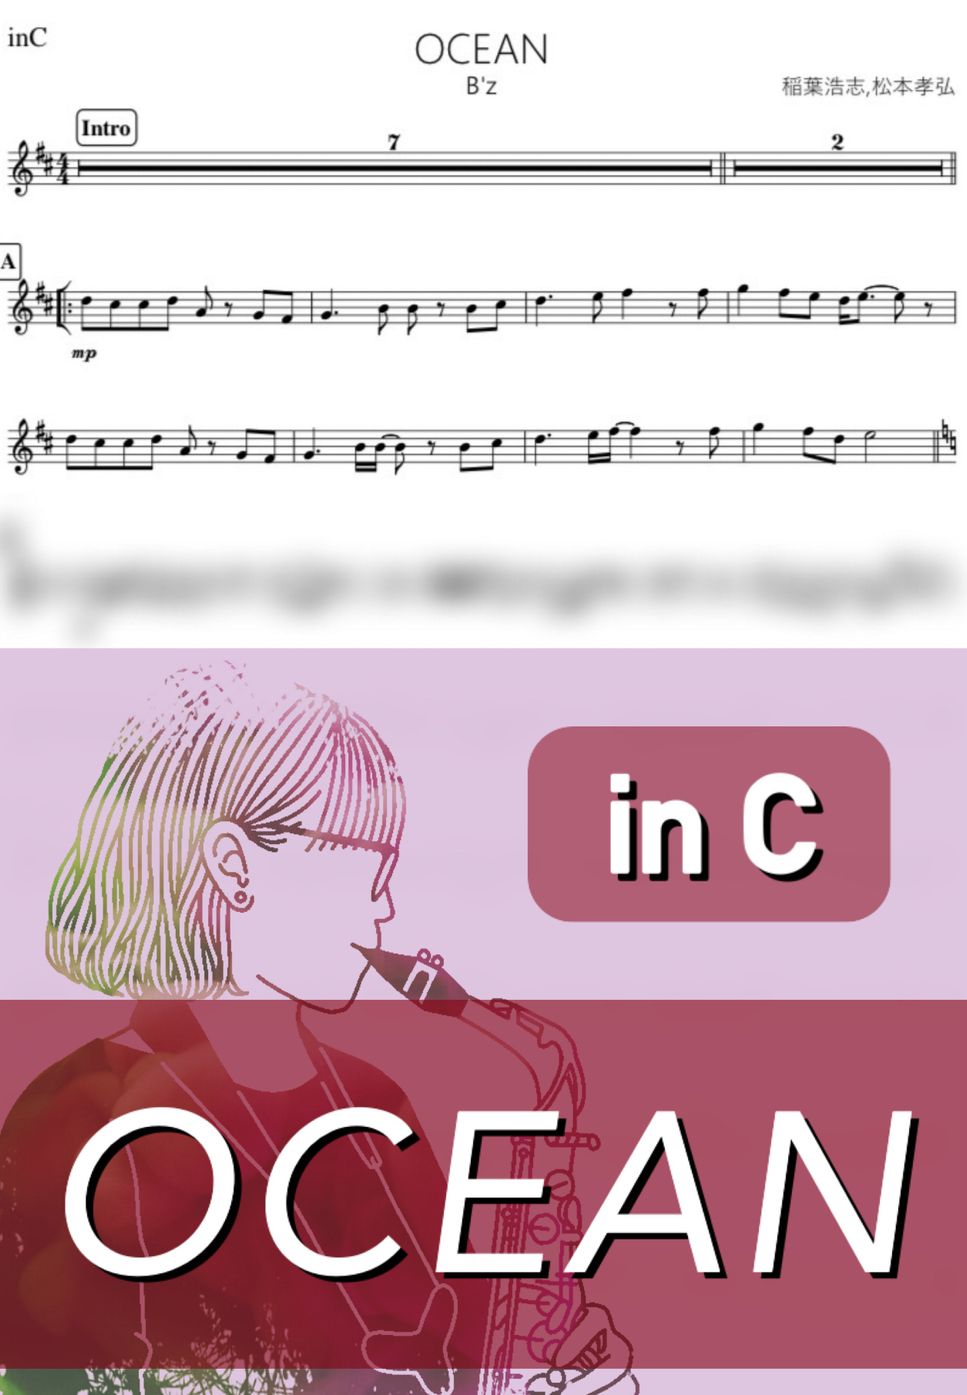 B'z - OCEAN (C) by kanamusic